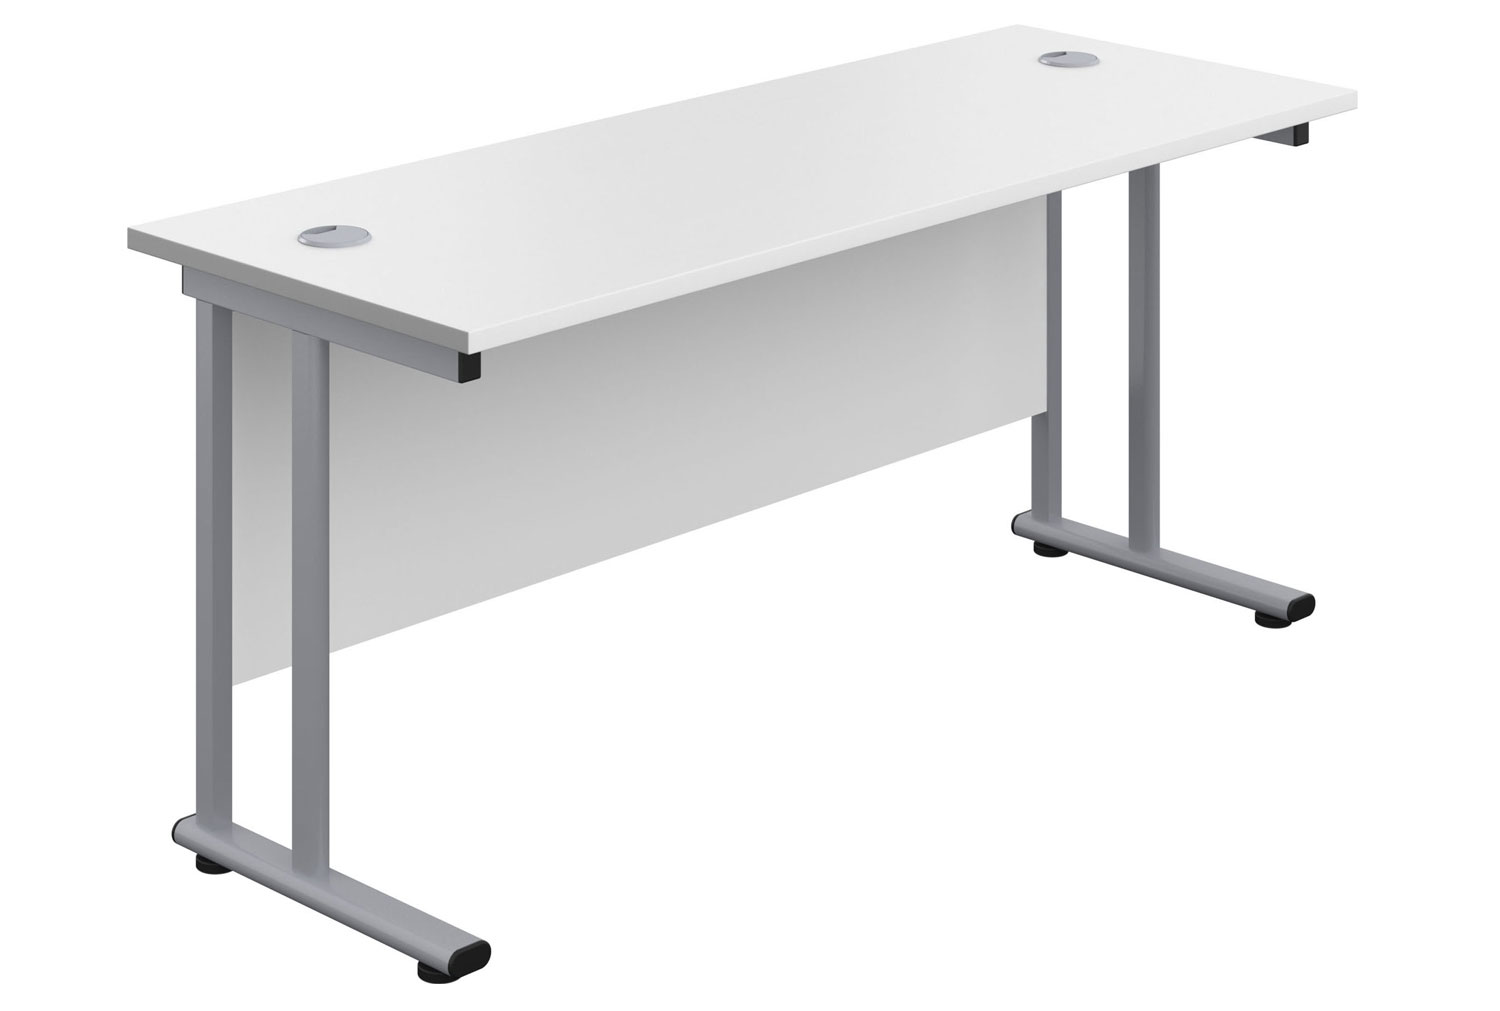 Impulse Narrow Rectangular Office Desk, 160w60dx73h (cm), Silver Frame, White